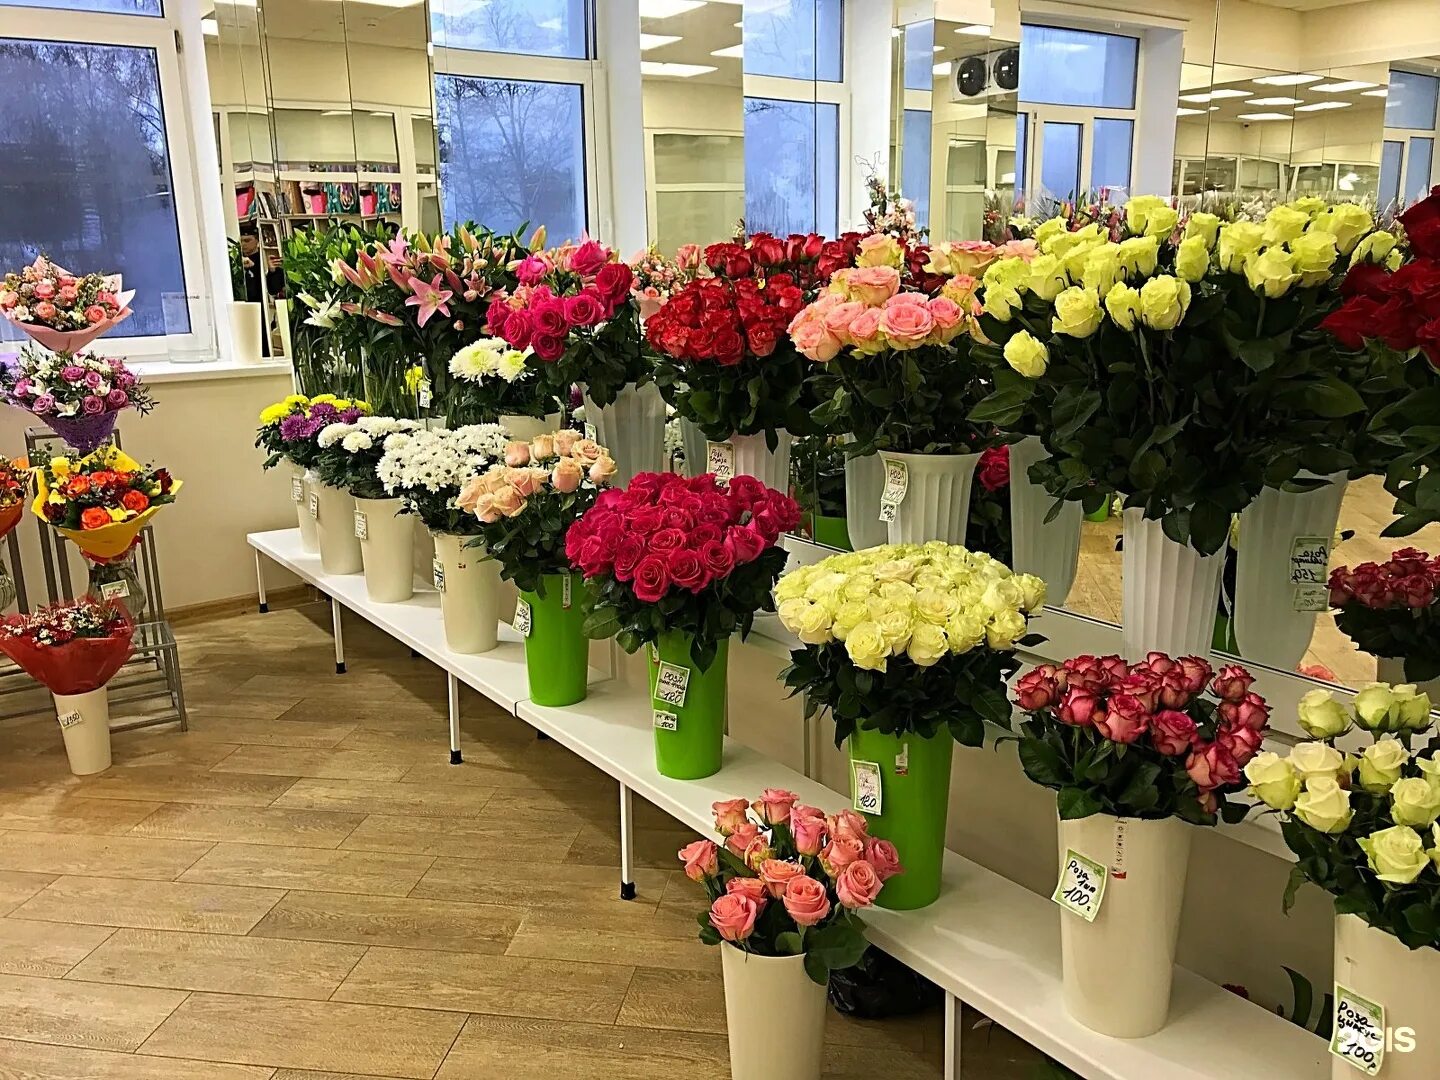 Купить розы в кемерово. Цветы в цветочном магазине. Цветы магазинные. Ассортимент цветочного магазина. Букеты в цветочных магазинах.